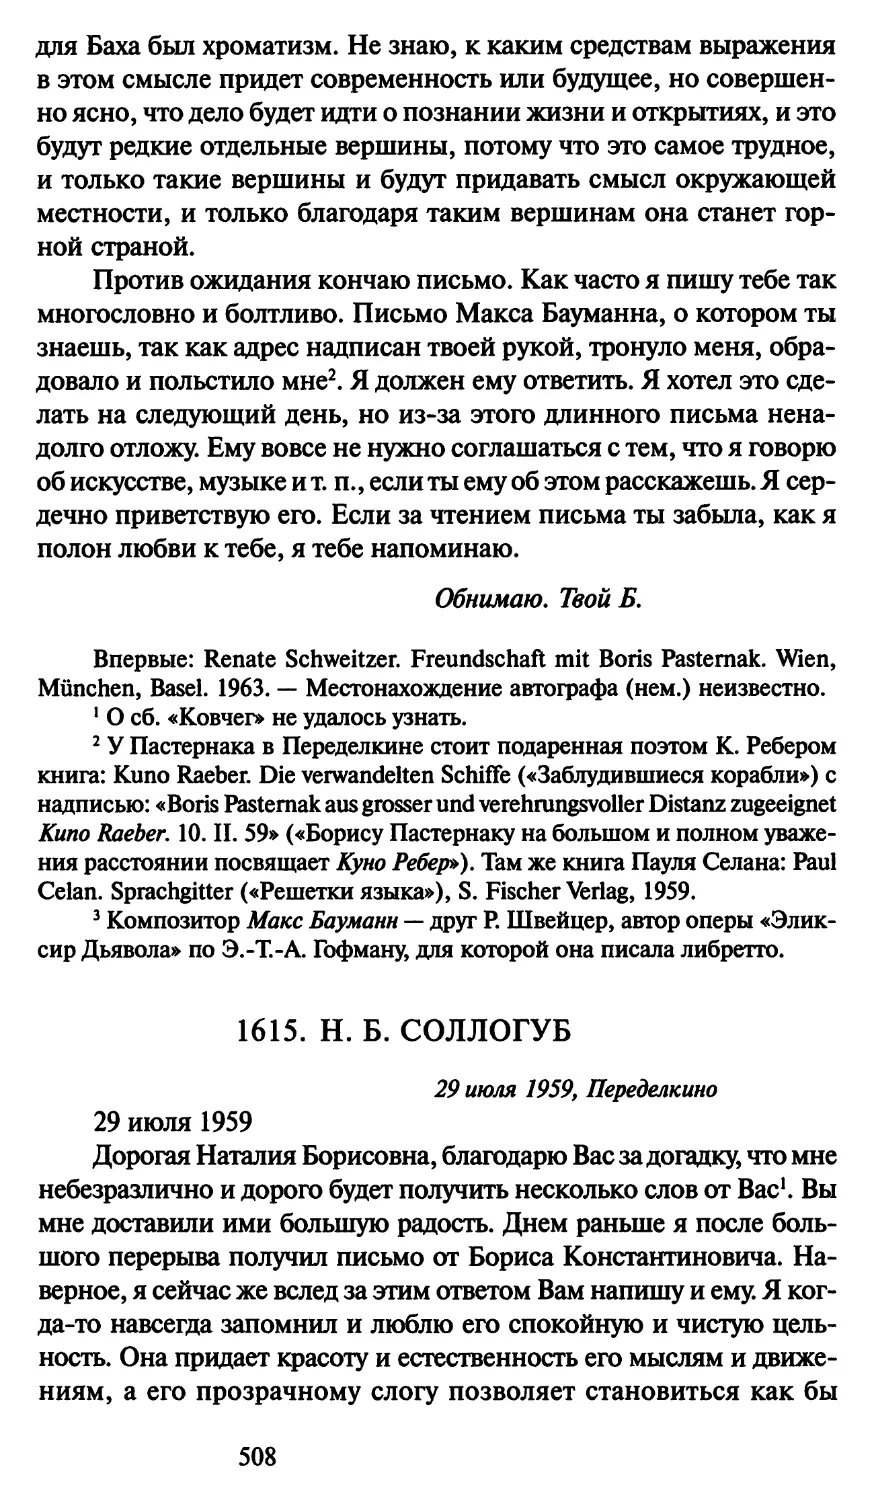 1615. Н. Б. Соллогуб 29 июля 1959